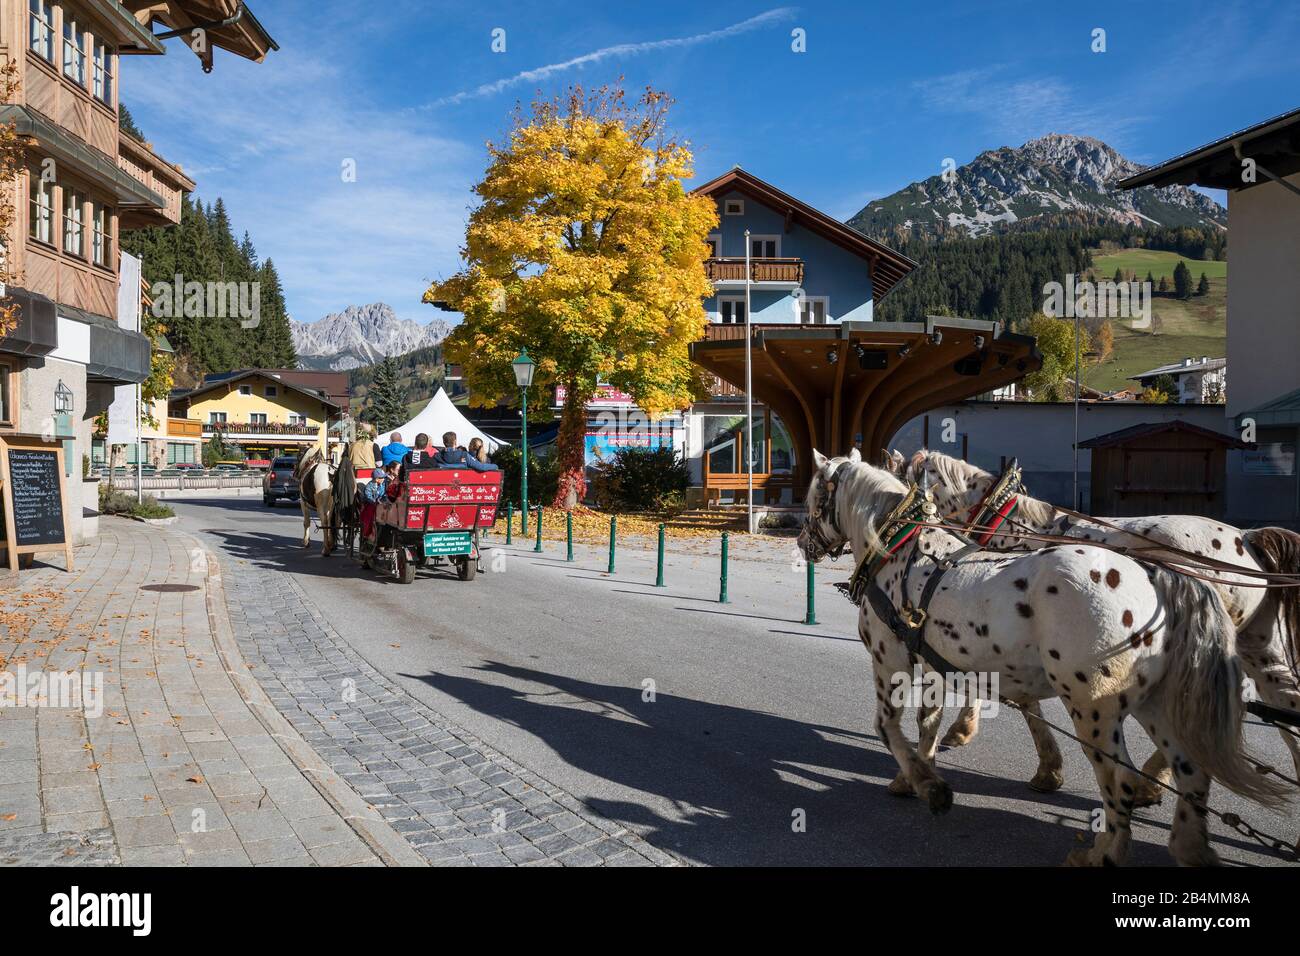 Kutschenfahrt in Filzmoos, Bezirk St. Johann im Pongau, Land Salzburg, Österreich, Oktober 2019 Stock Photo